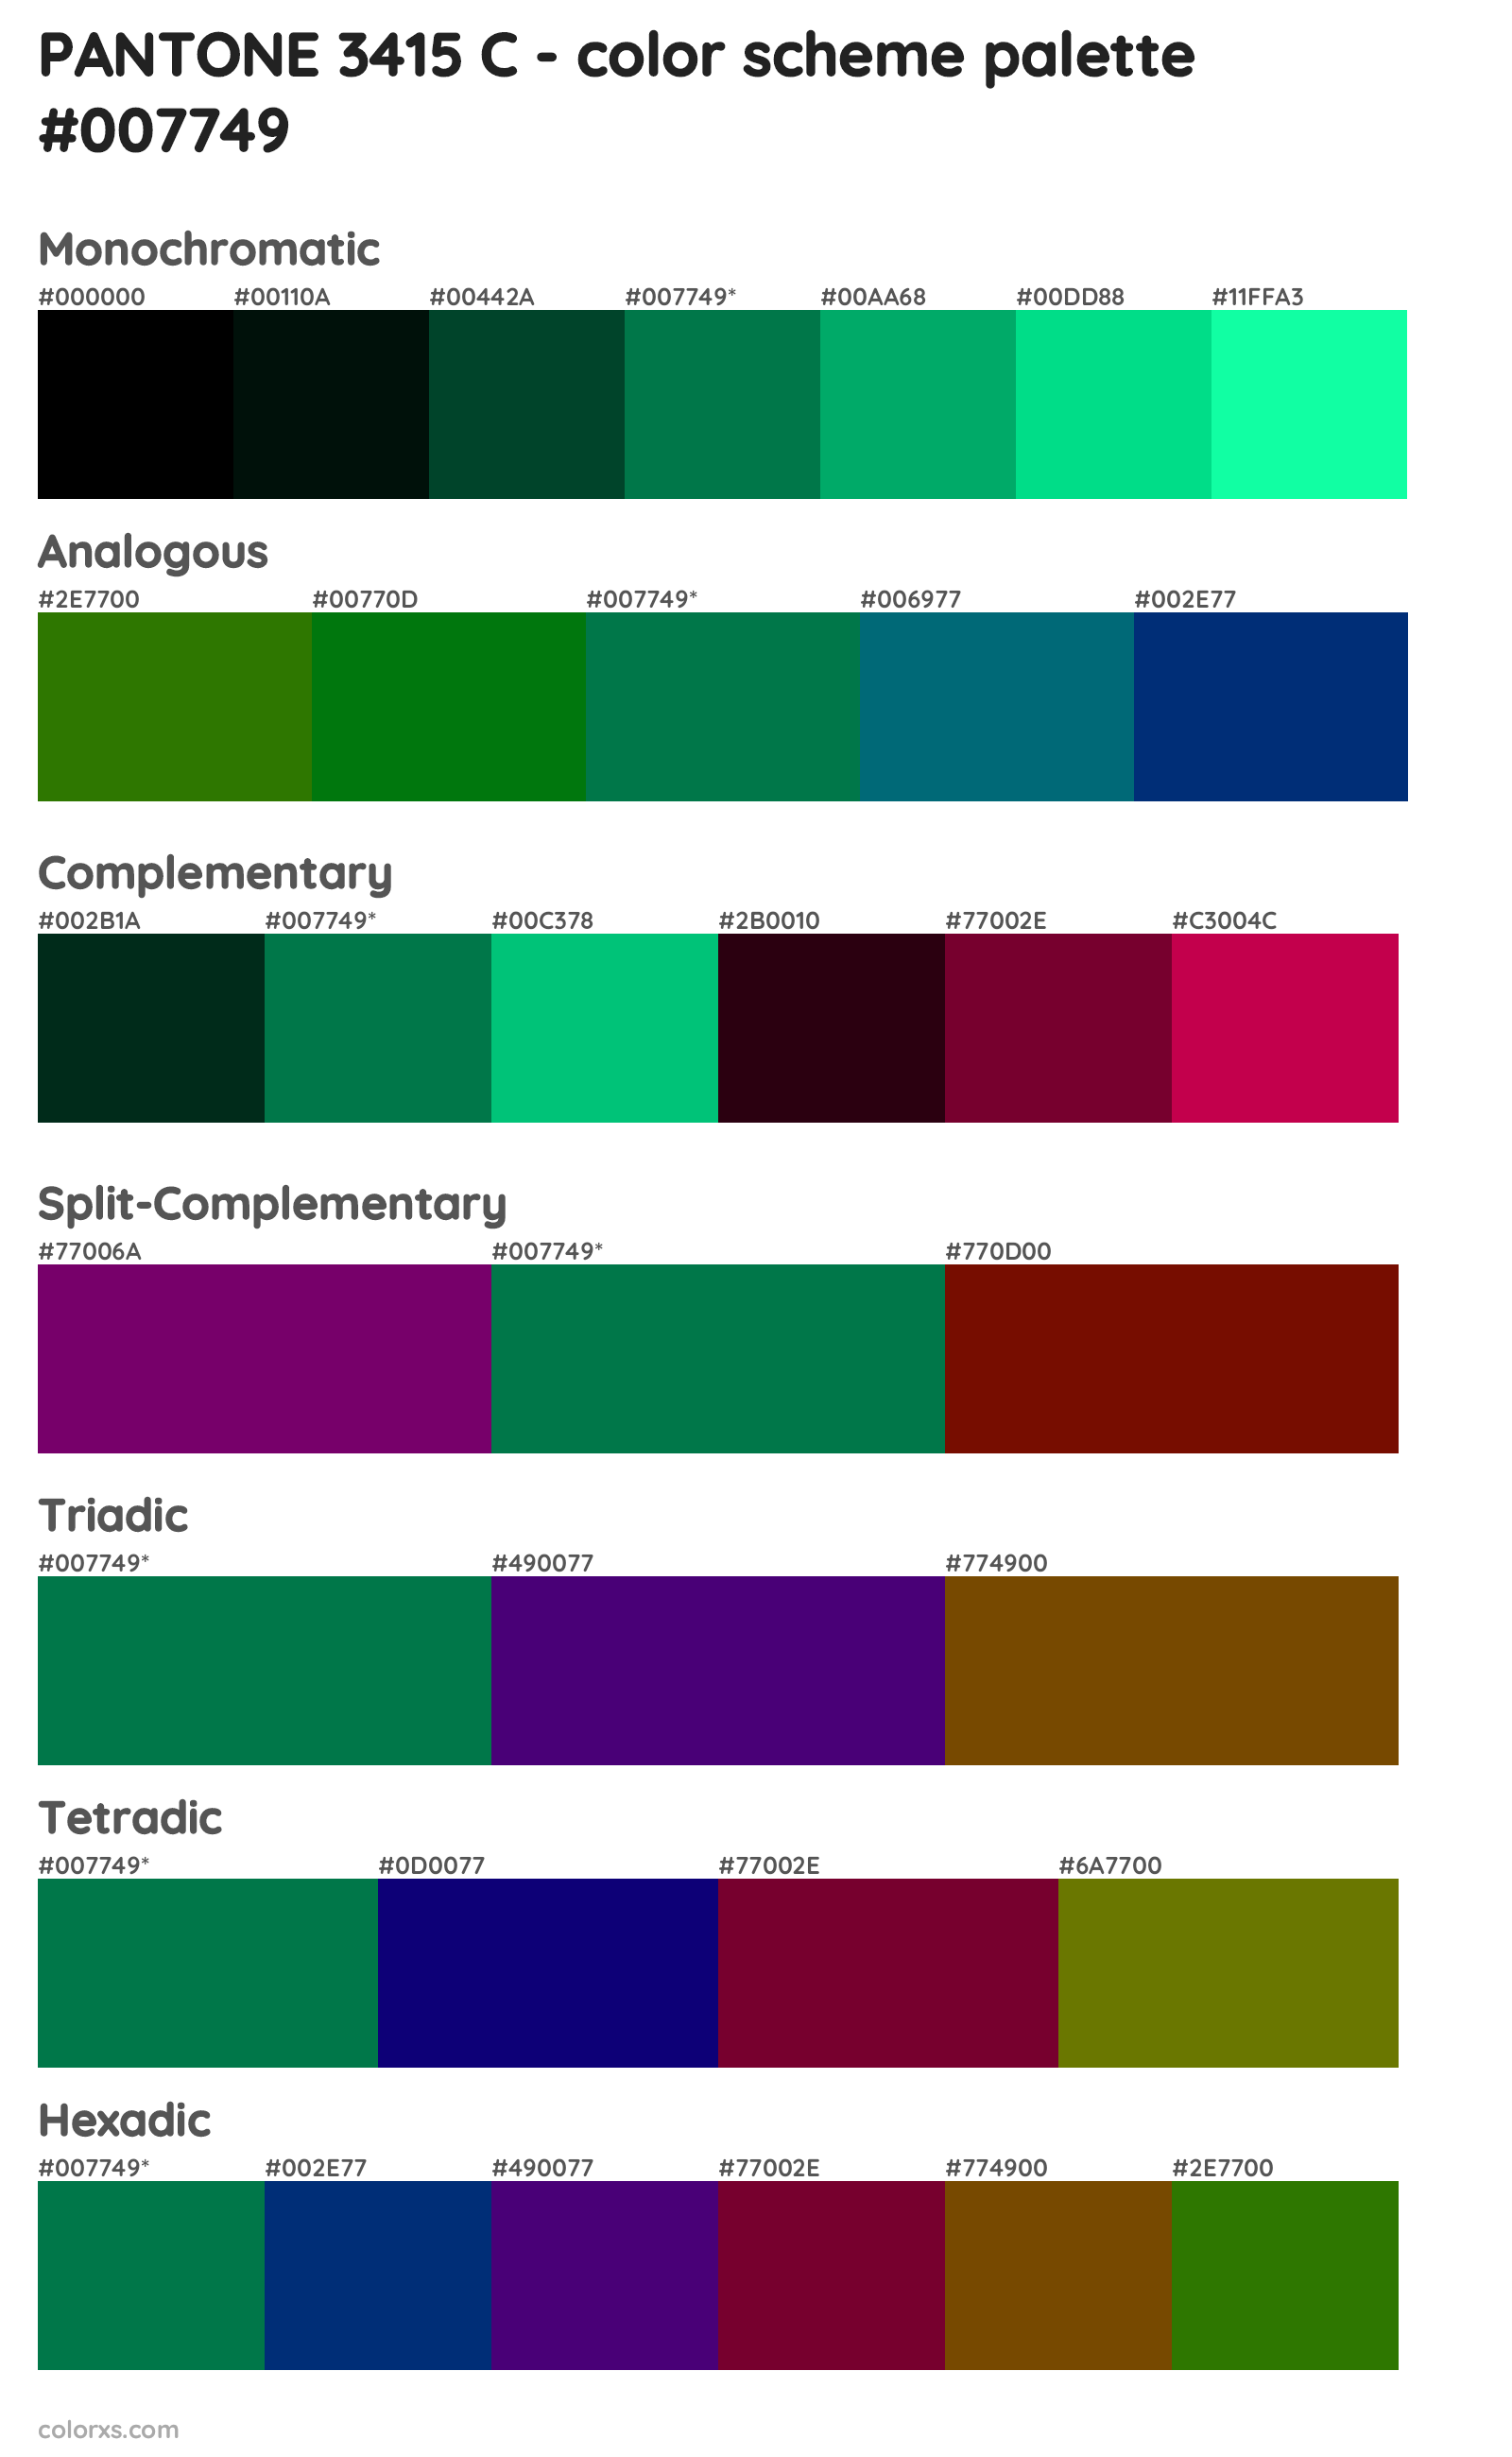 PANTONE 3415 C Color Scheme Palettes